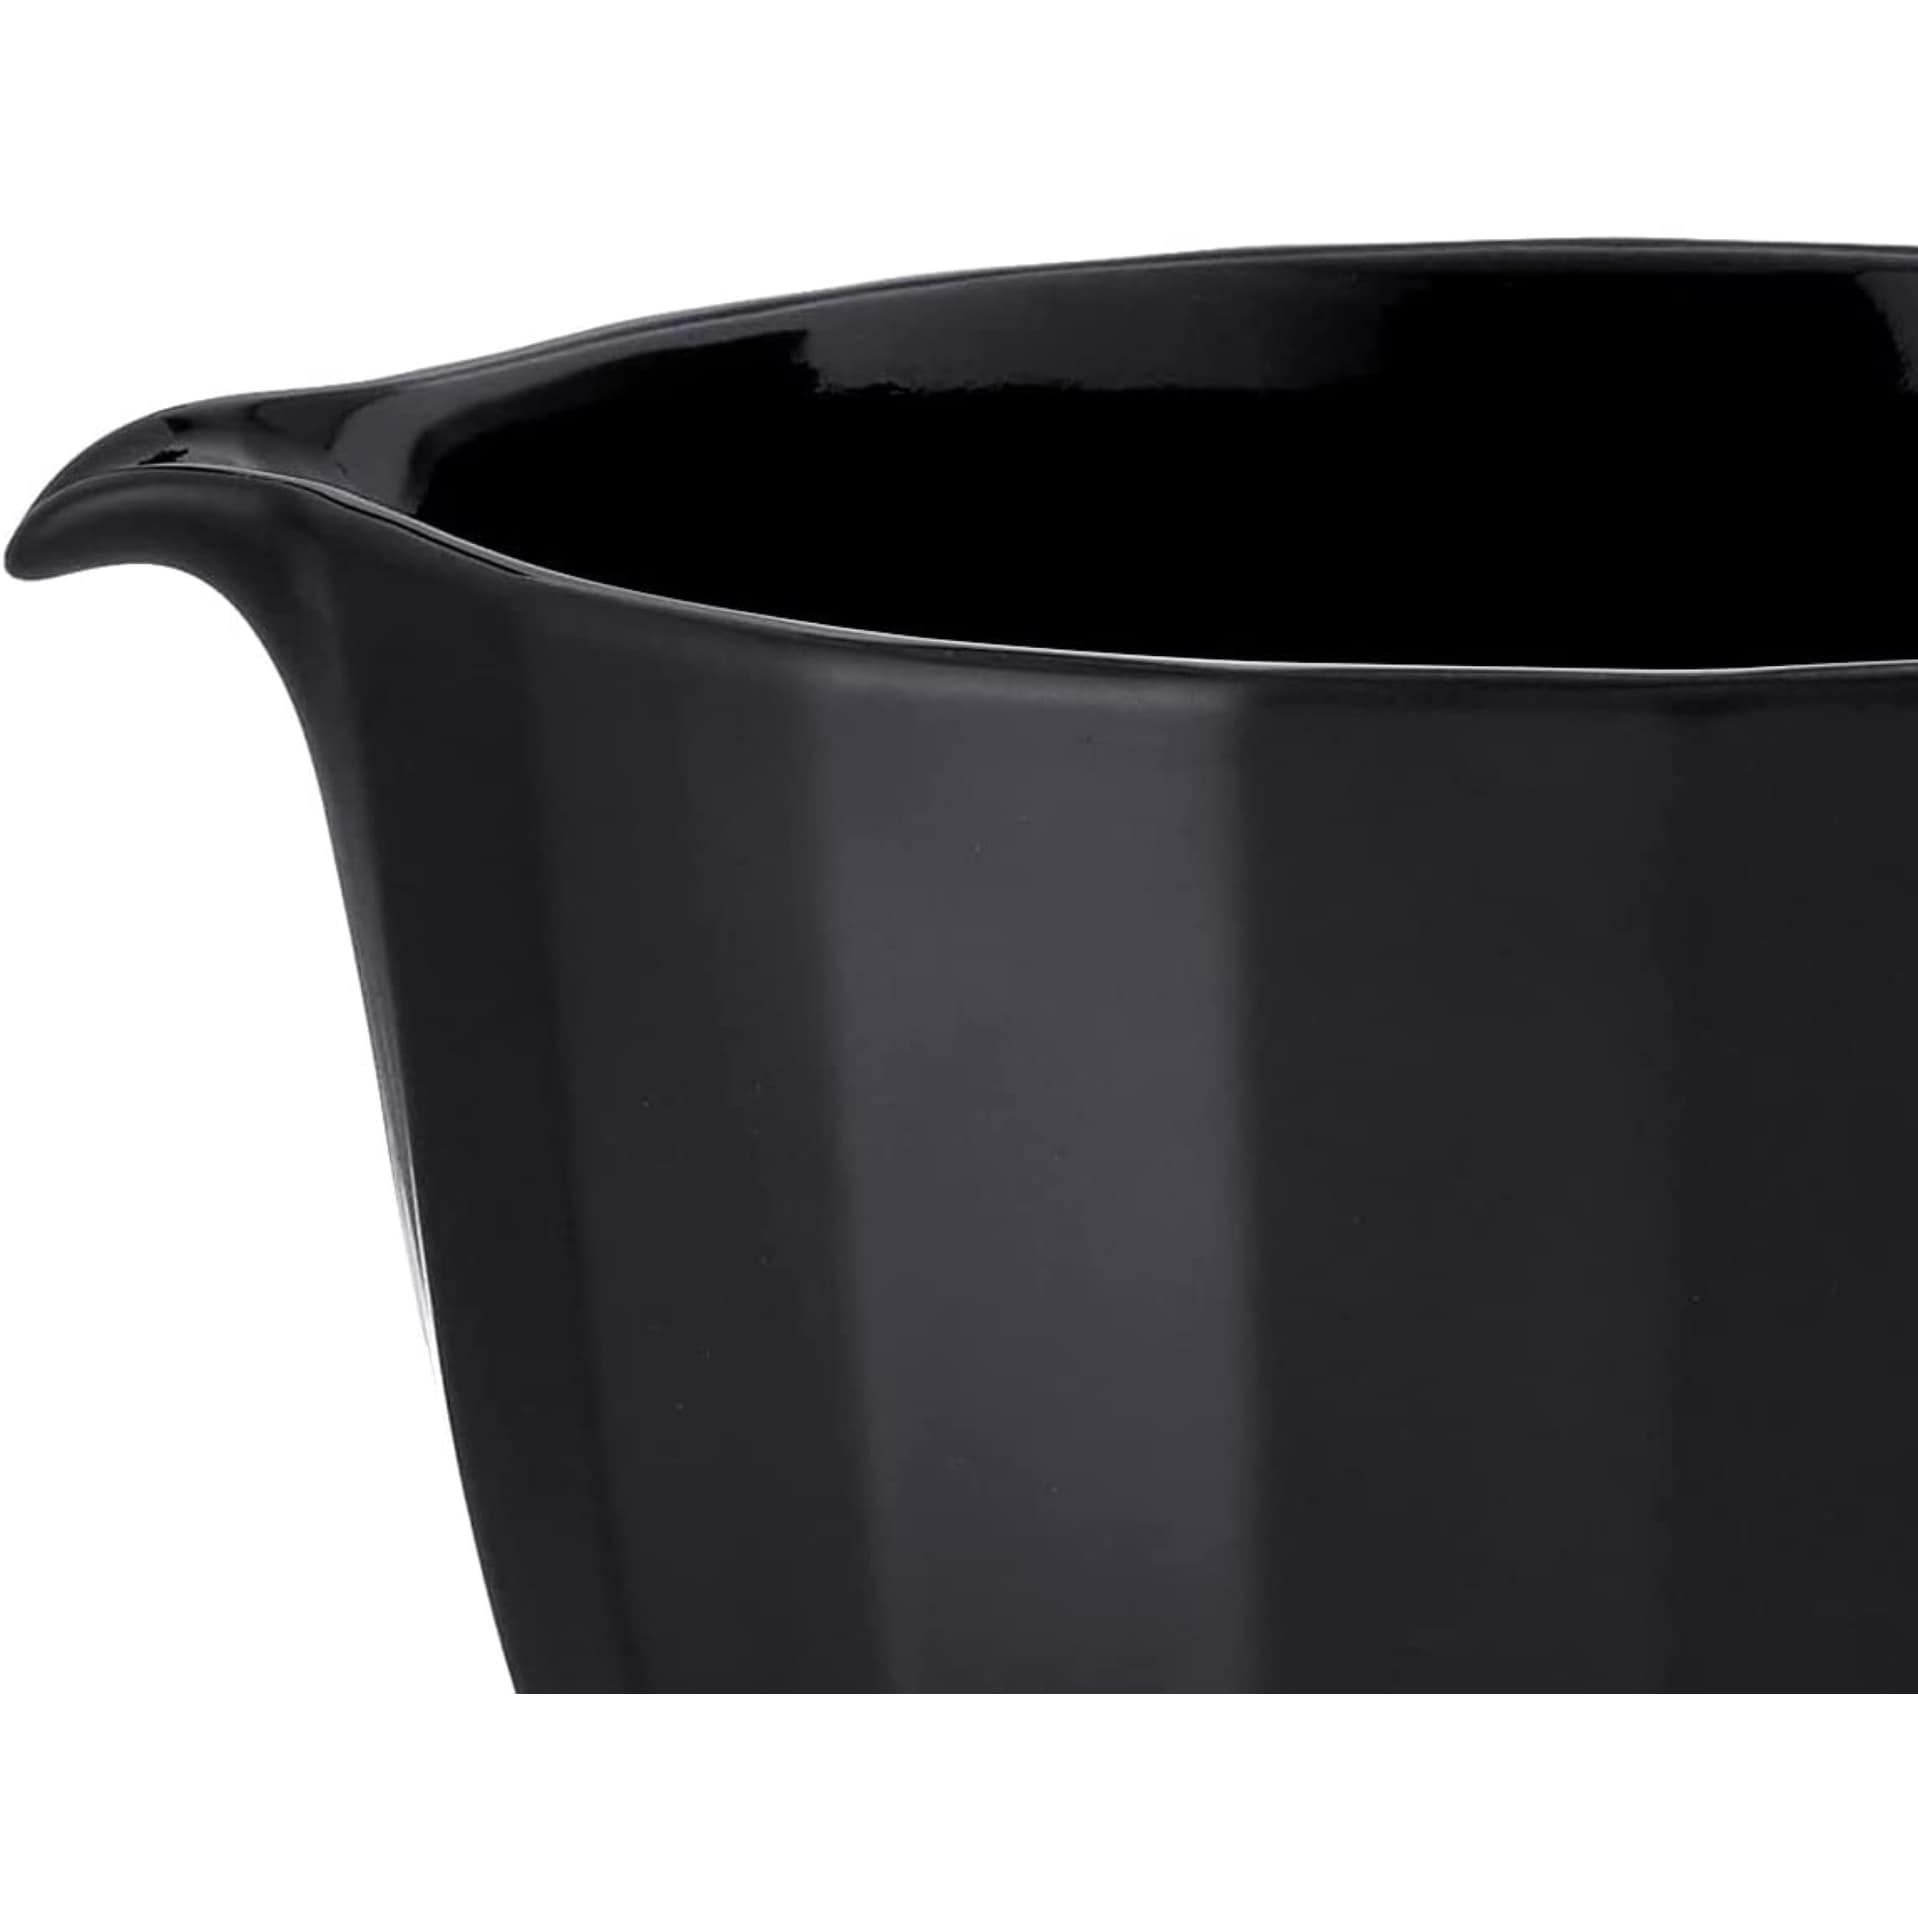 5 Quart Black Shell Ceramic Bowl Black Shell KSM2CB5PBS